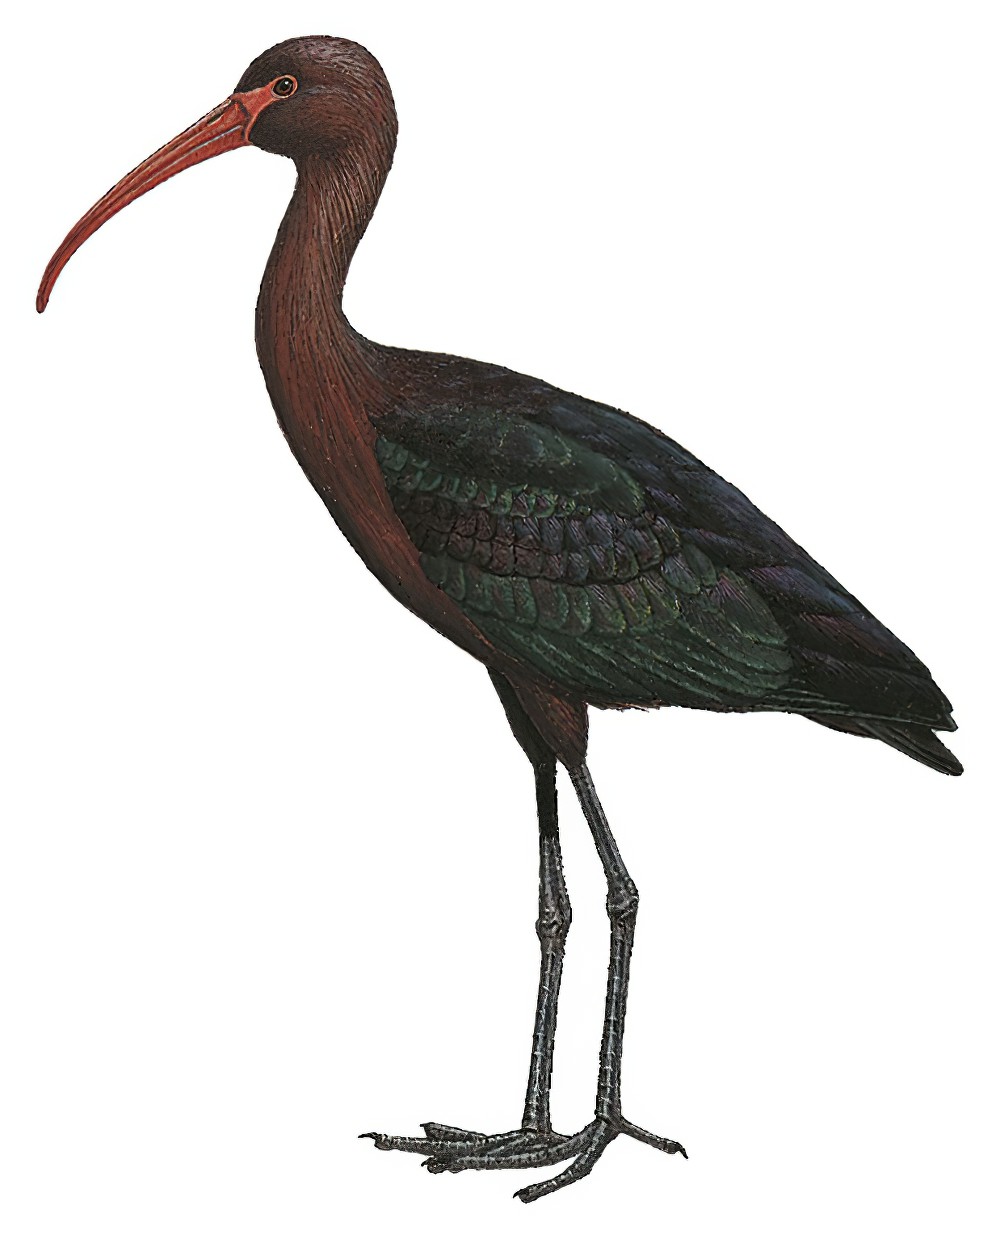 Puna Ibis / Plegadis ridgwayi